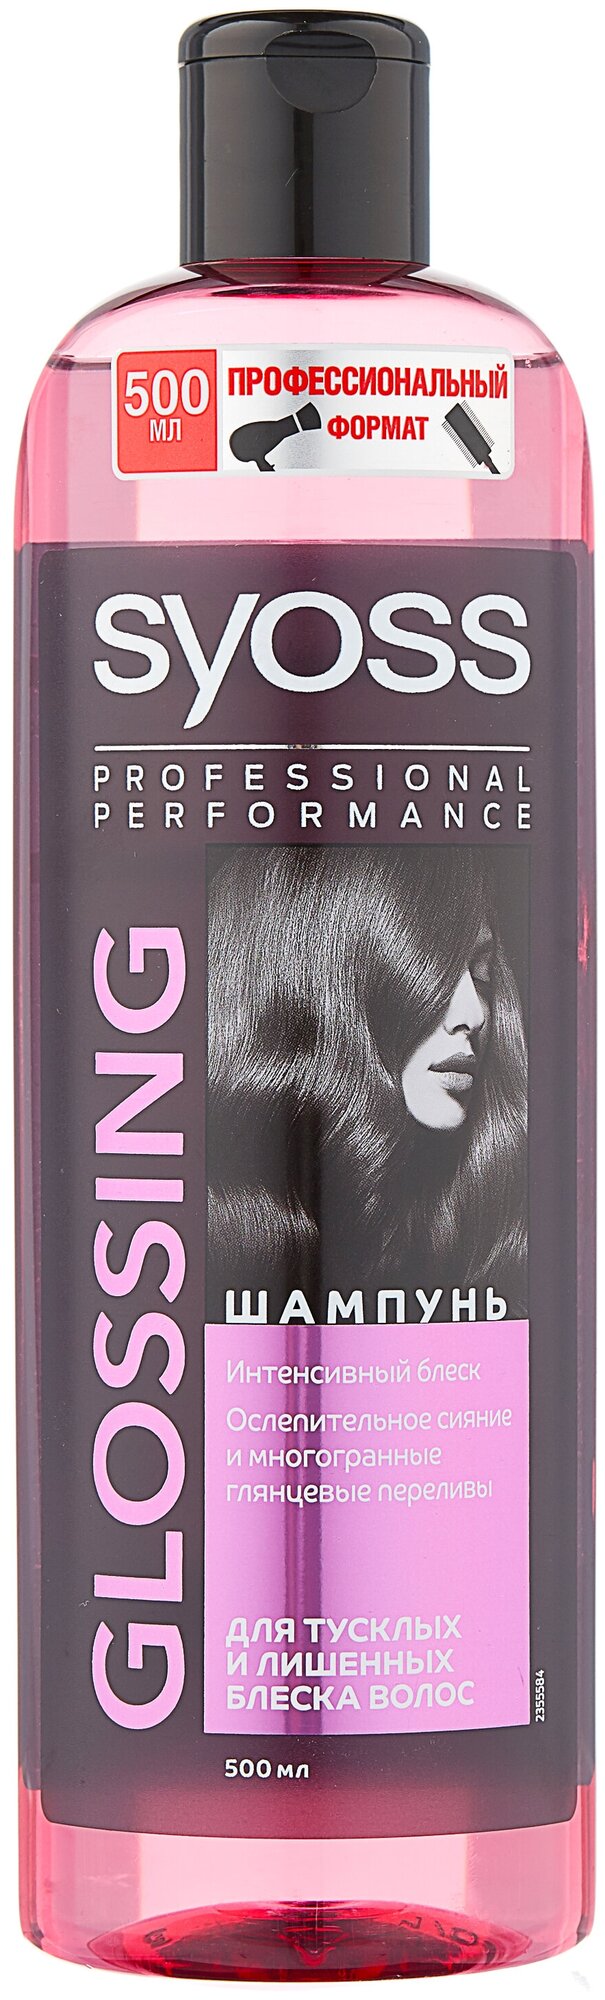 Шампунь для волос Syoss Glossing 450мл - фото №1